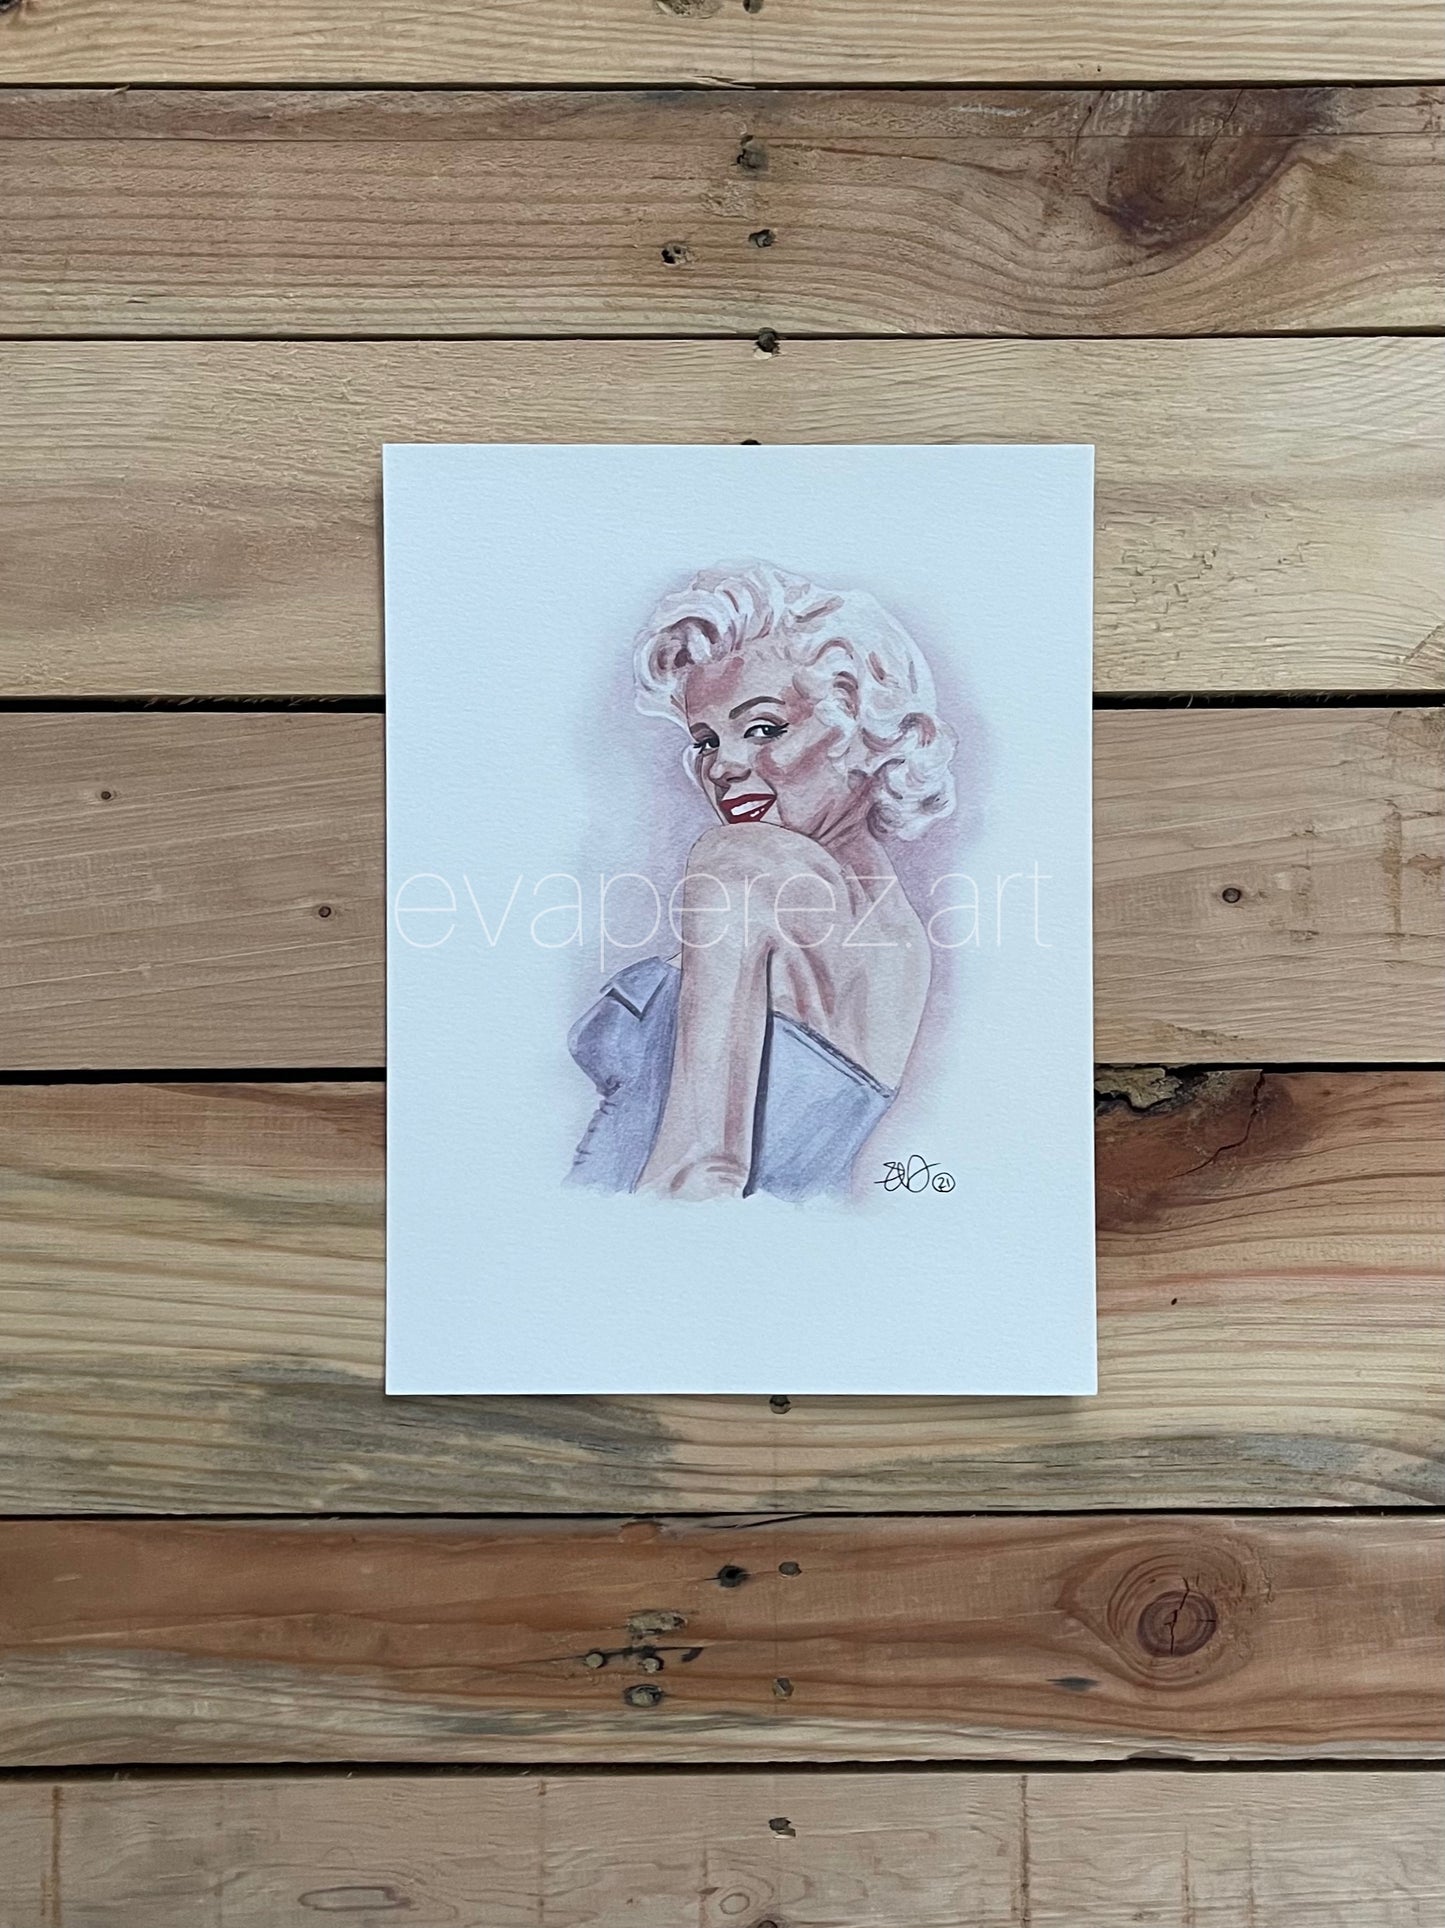 Marilyn Monroe Watercolor Print